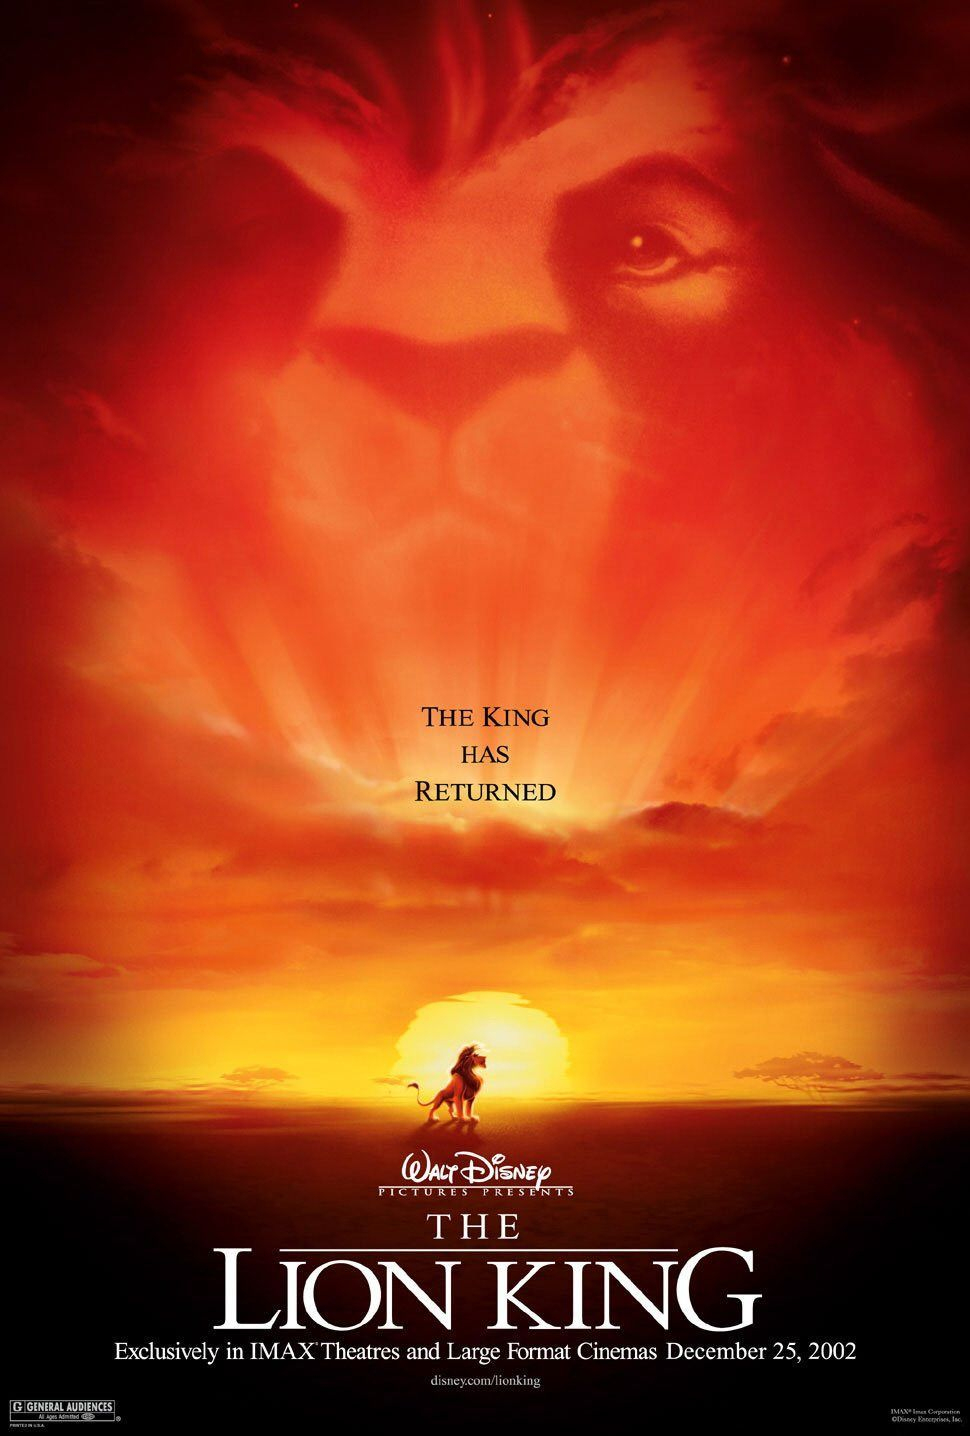 Affiches, Posters Et Images De Le Roi Lion (1994 concernant Affiche Le Roi Lion 